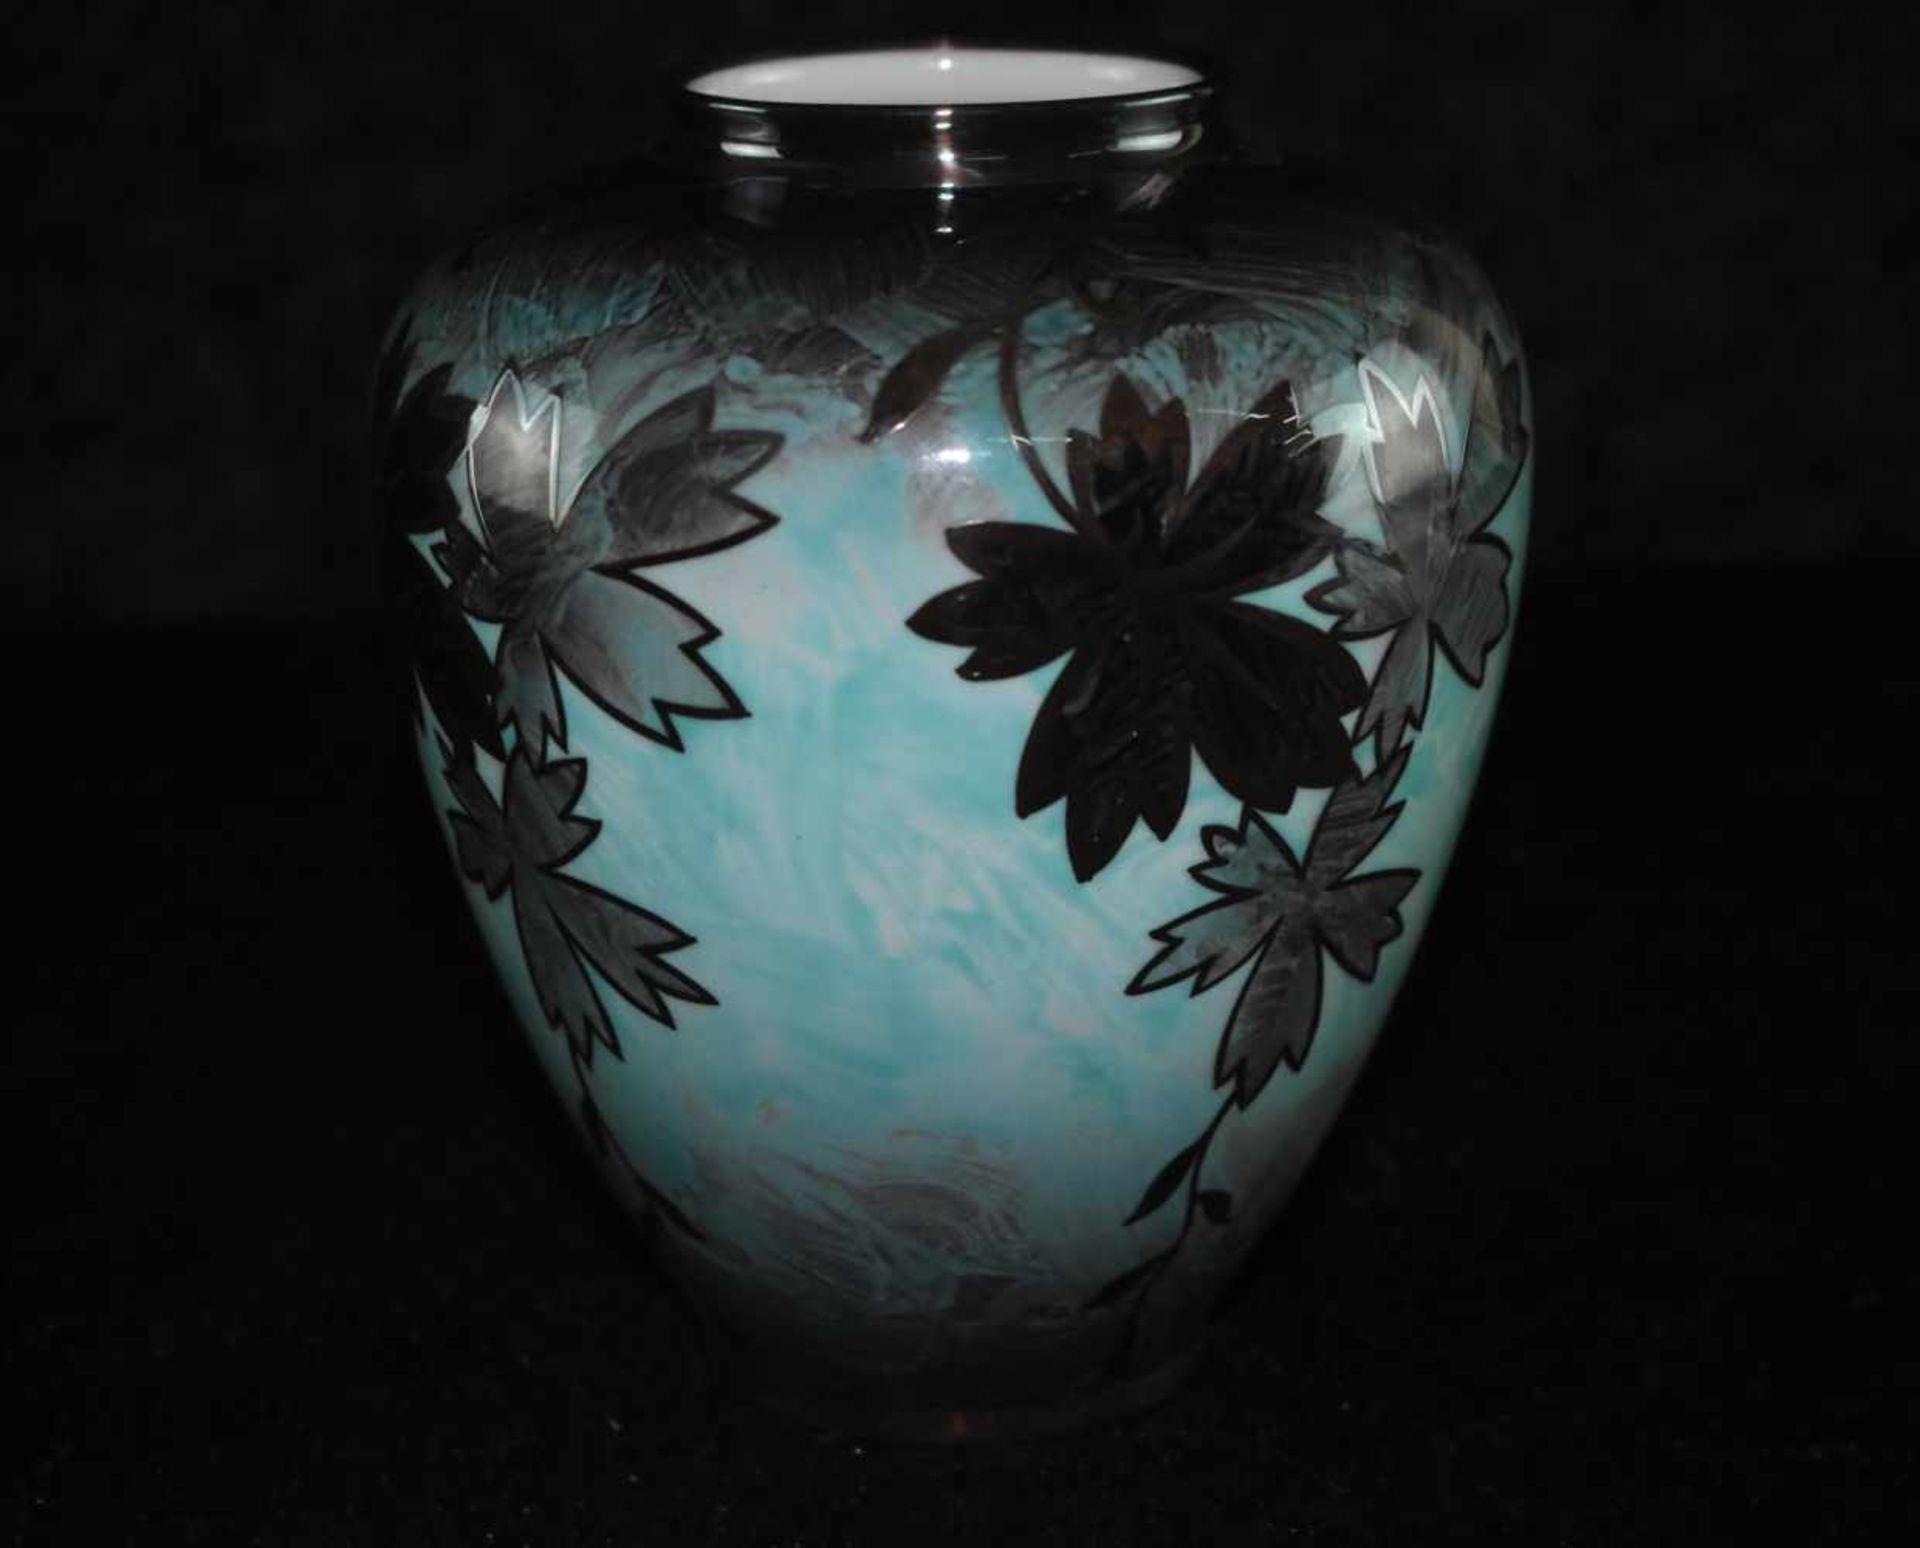 Porzellanmanufraktur Jäger & Co, PmR Bayern, türkise Vase mit schwarzen Ahornblätter, 1950-90 Made